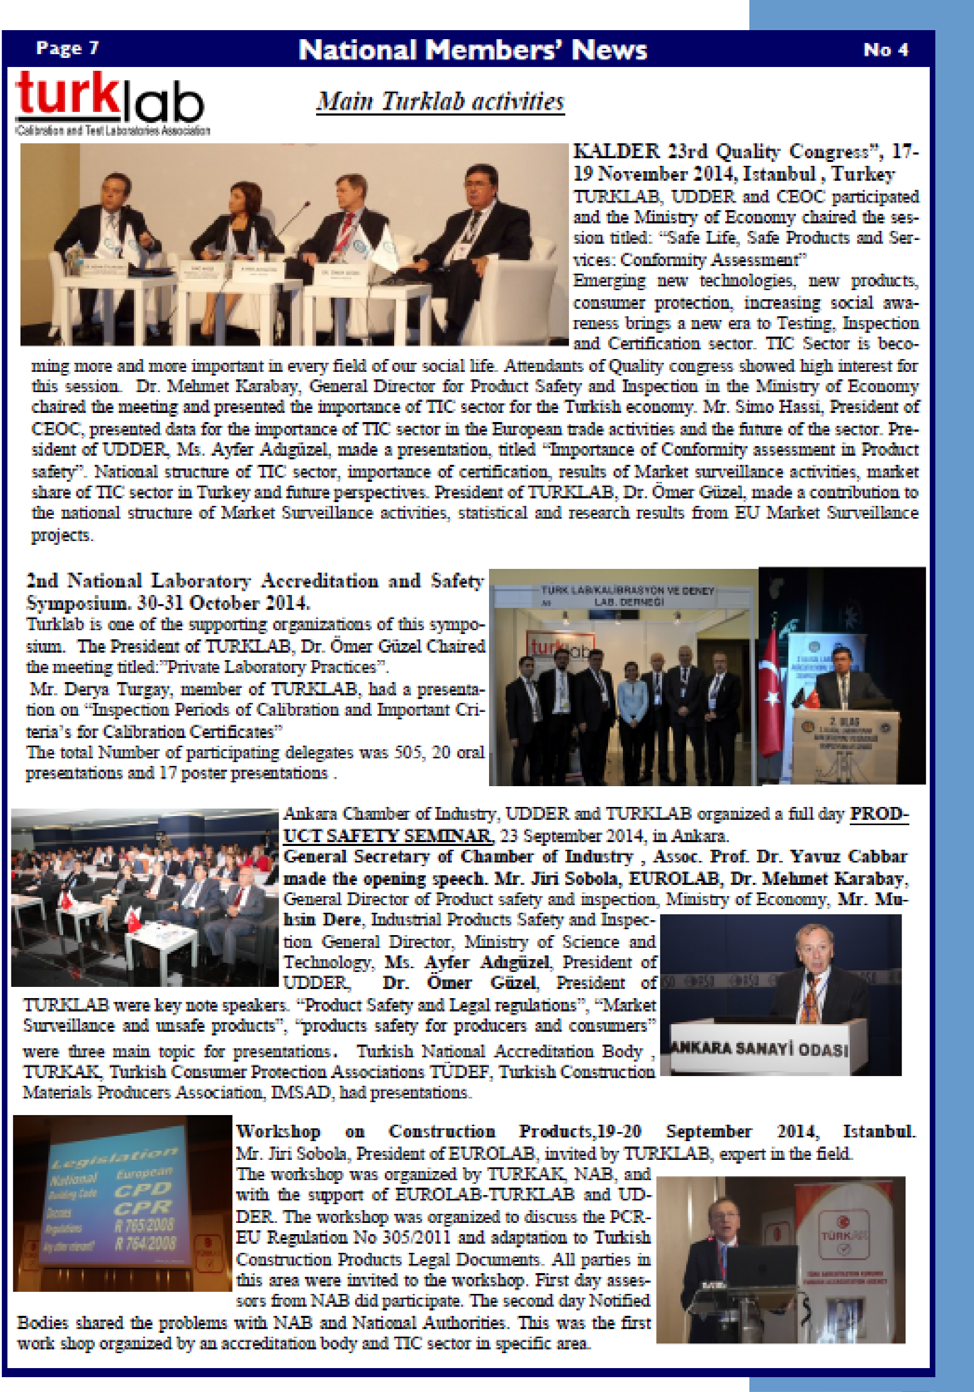 EUROLAB GENEL KURUL TOPLANTISI 31 MART - 2 NİSAN 2014 VARŞOVA EUROLAB Genel Kurulu ve Teknik Kalite Güvence Grubu toplantıları 31 Mart ve 2 Nisan 2014 tarihleri arasında Varşova da (Polonya)